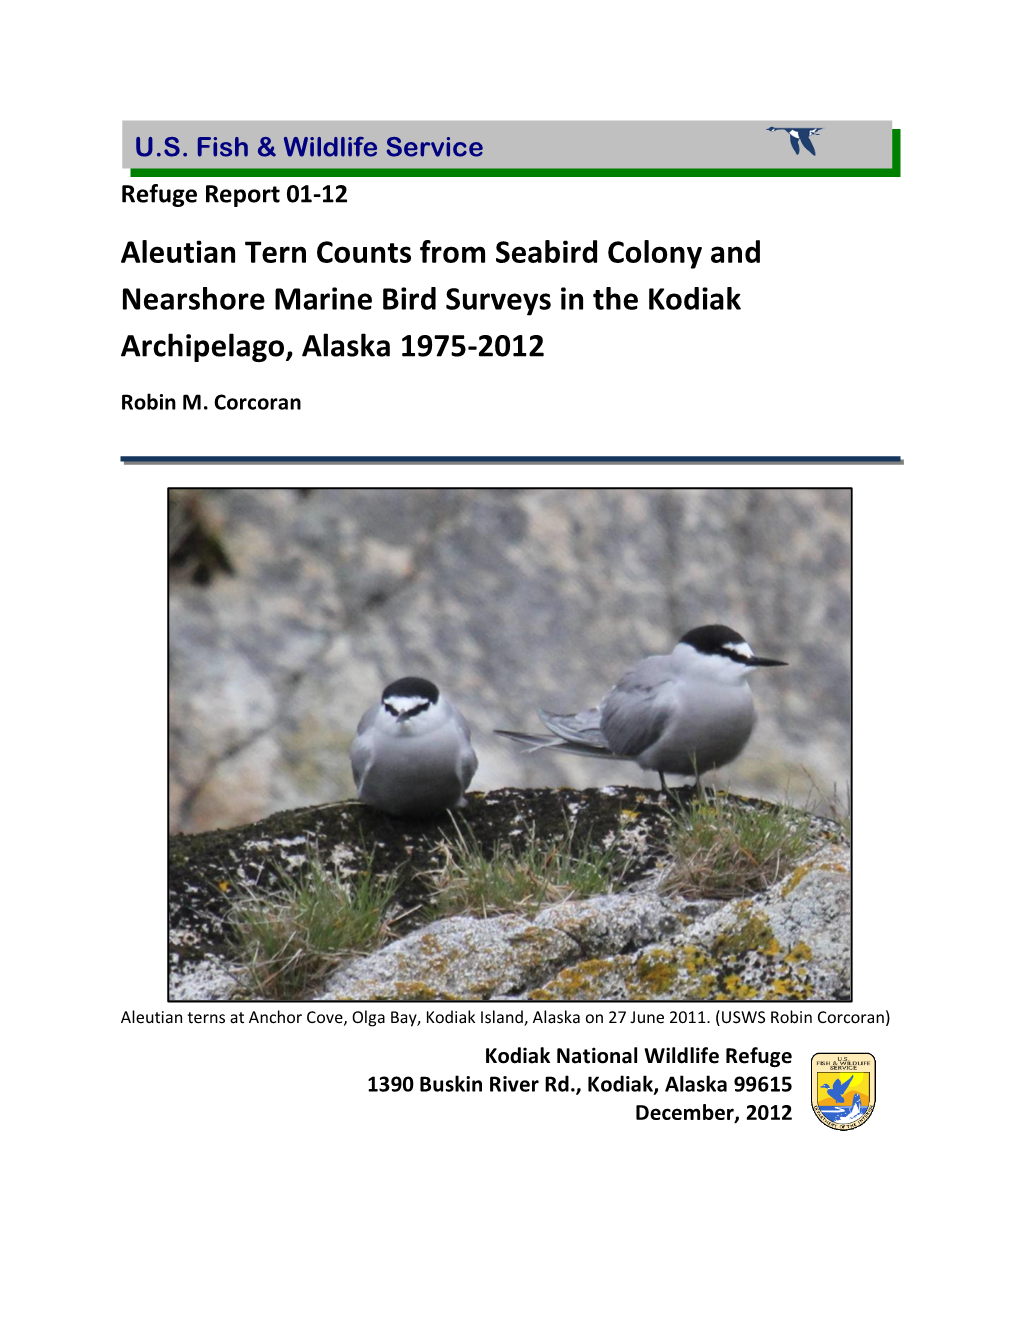 Kodiak Aleutian Tern Counts 1975-2012